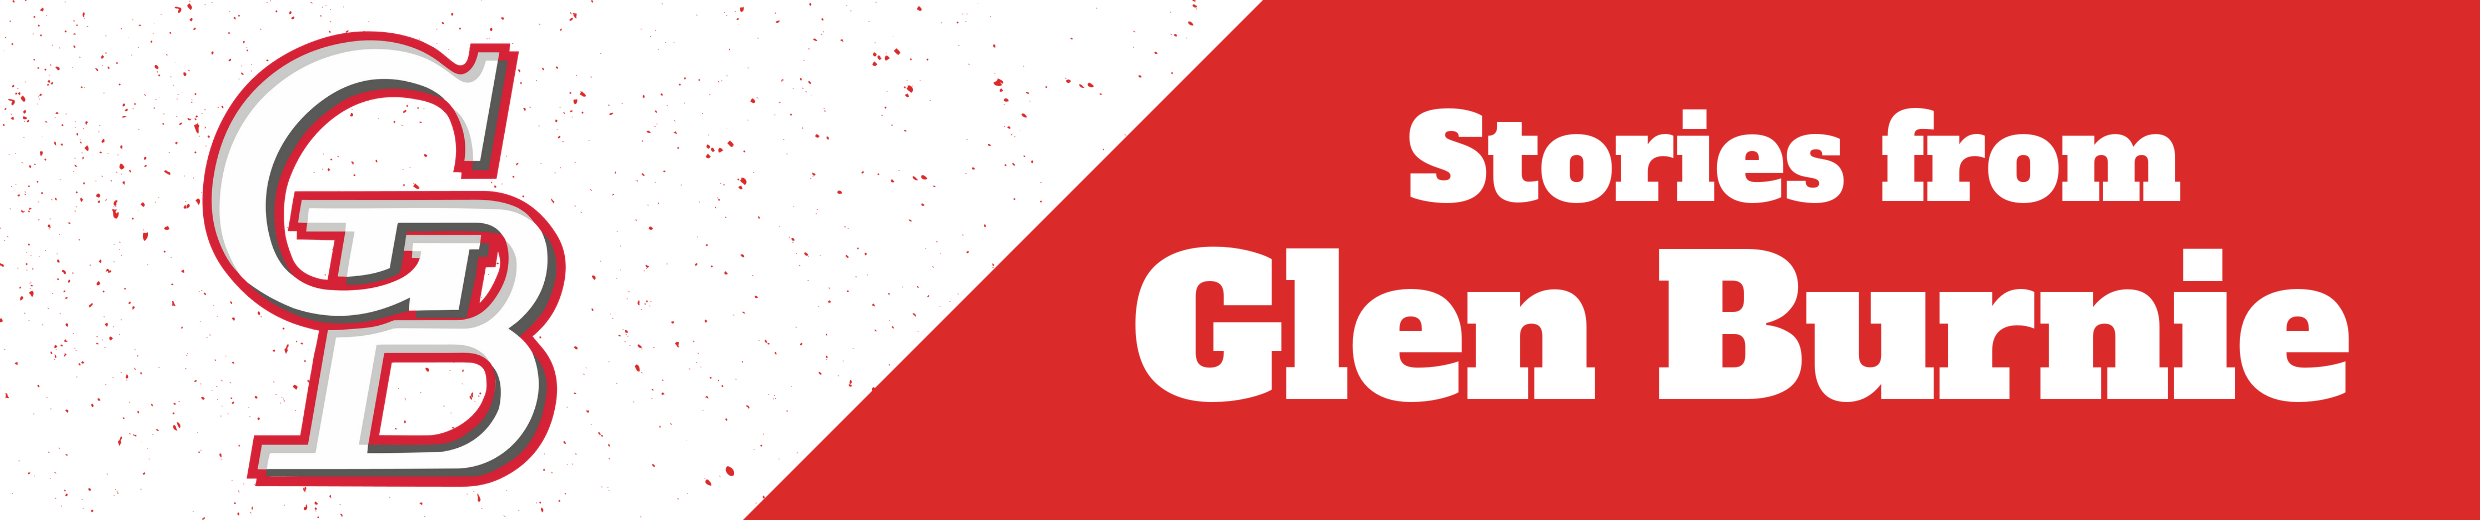 Stories from Glen Burnie--white text on red background with Glen Burnie High School logo